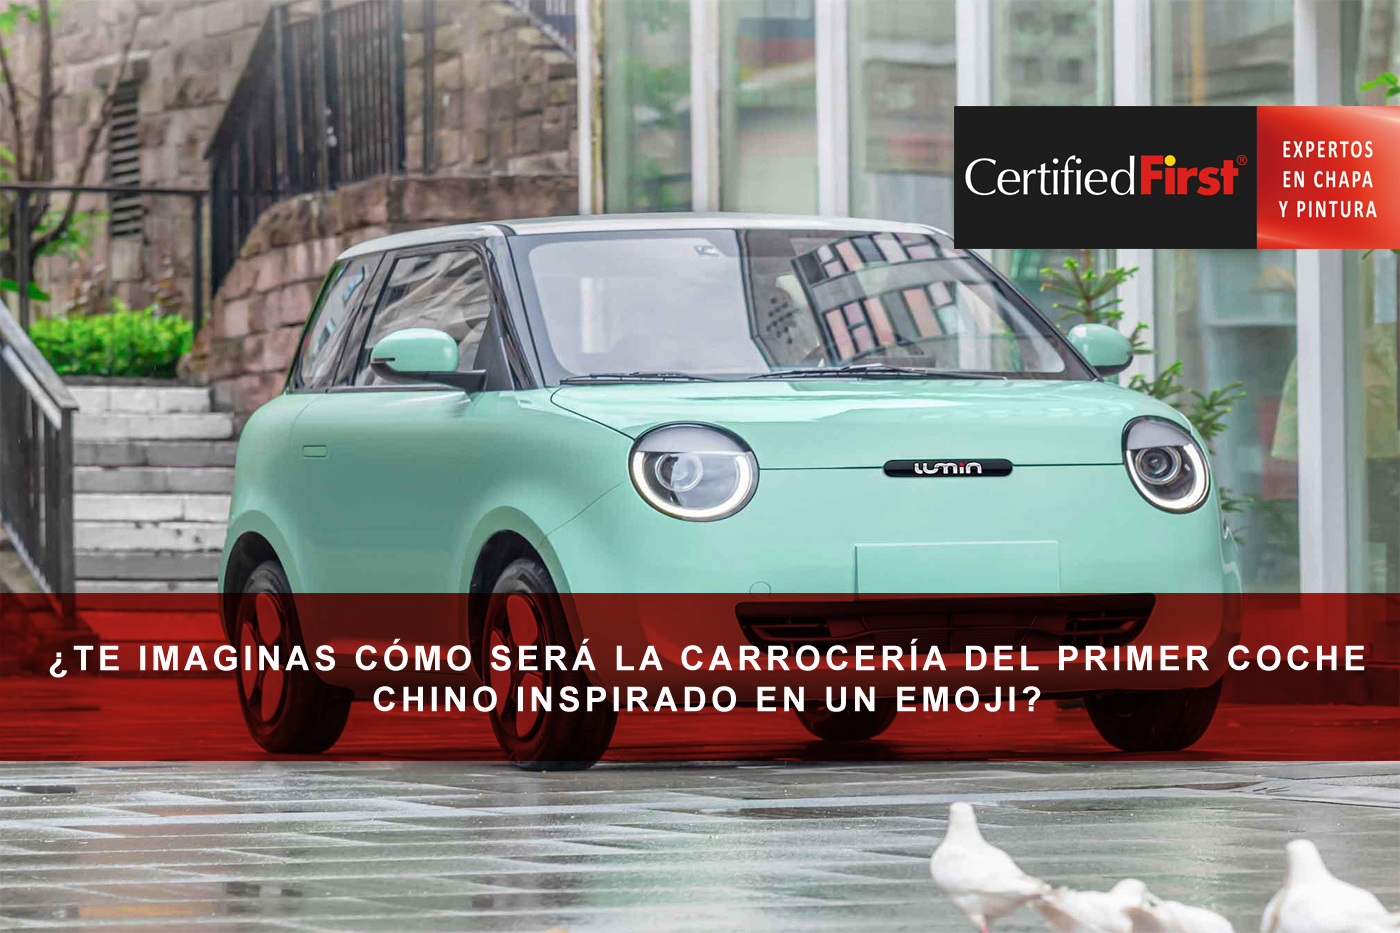 ¿Te imaginas cómo será la carrocería del primer coche chino inspirado en un emoji?